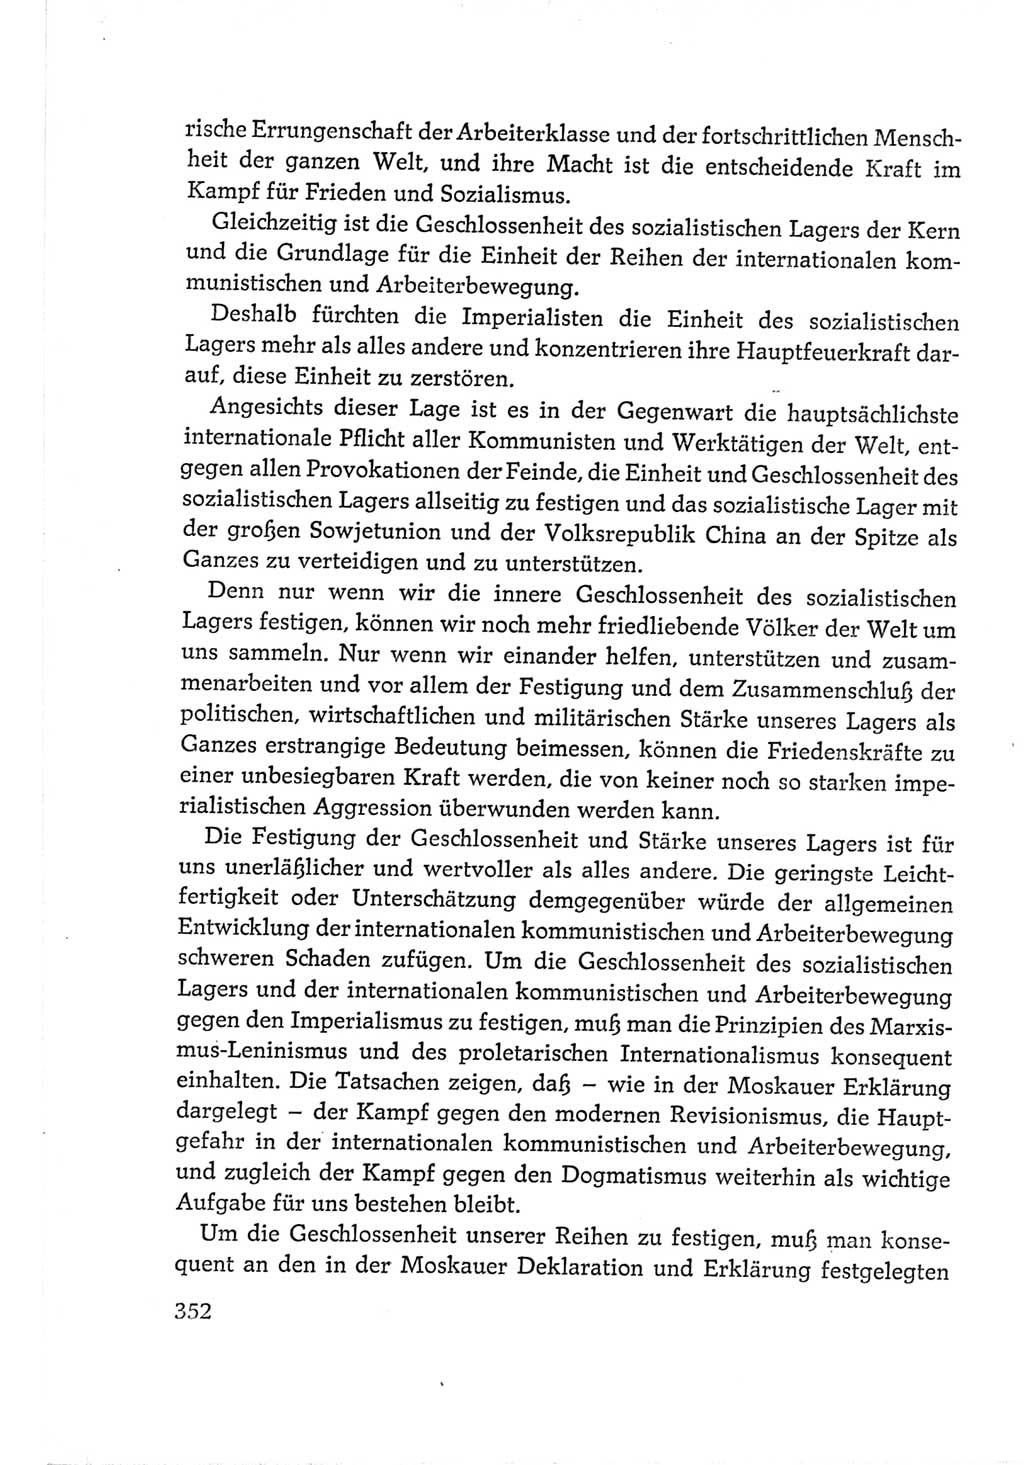 Protokoll der Verhandlungen des Ⅵ. Parteitages der Sozialistischen Einheitspartei Deutschlands (SED) [Deutsche Demokratische Republik (DDR)] 1963, Band Ⅱ, Seite 352 (Prot. Verh. Ⅵ. PT SED DDR 1963, Bd. Ⅱ, S. 352)